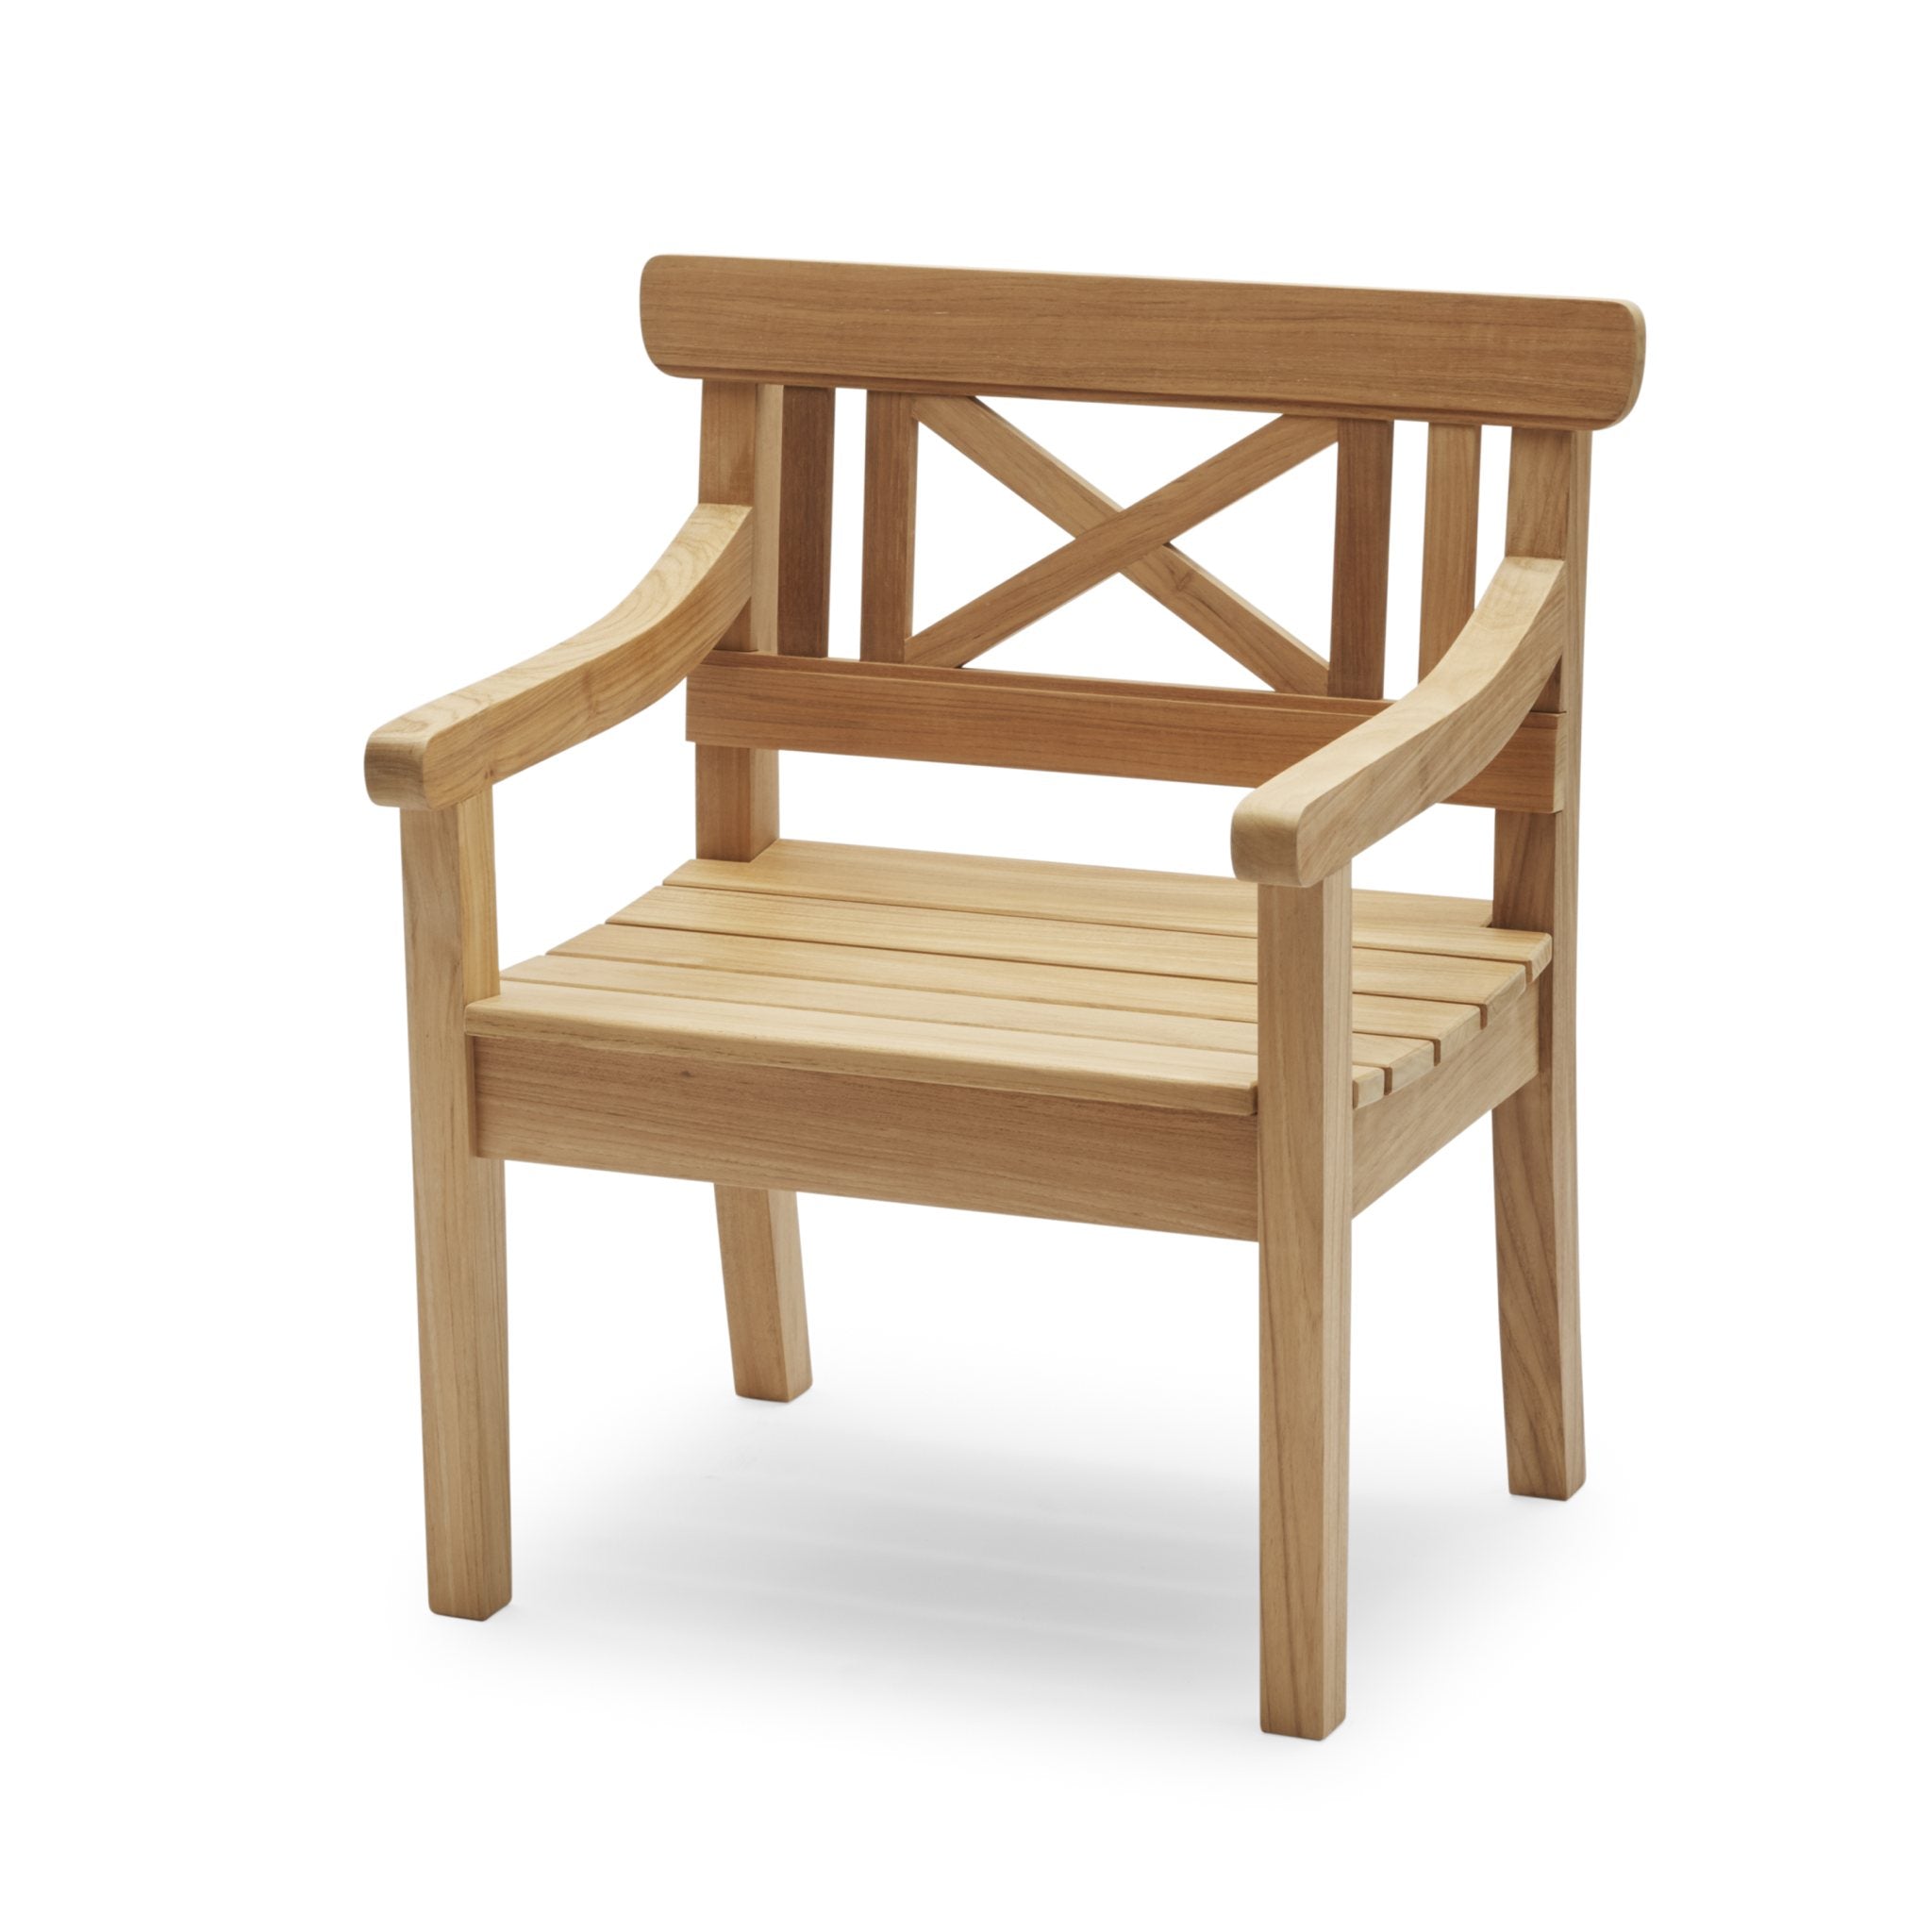 Drachmann Chair by Skagerak